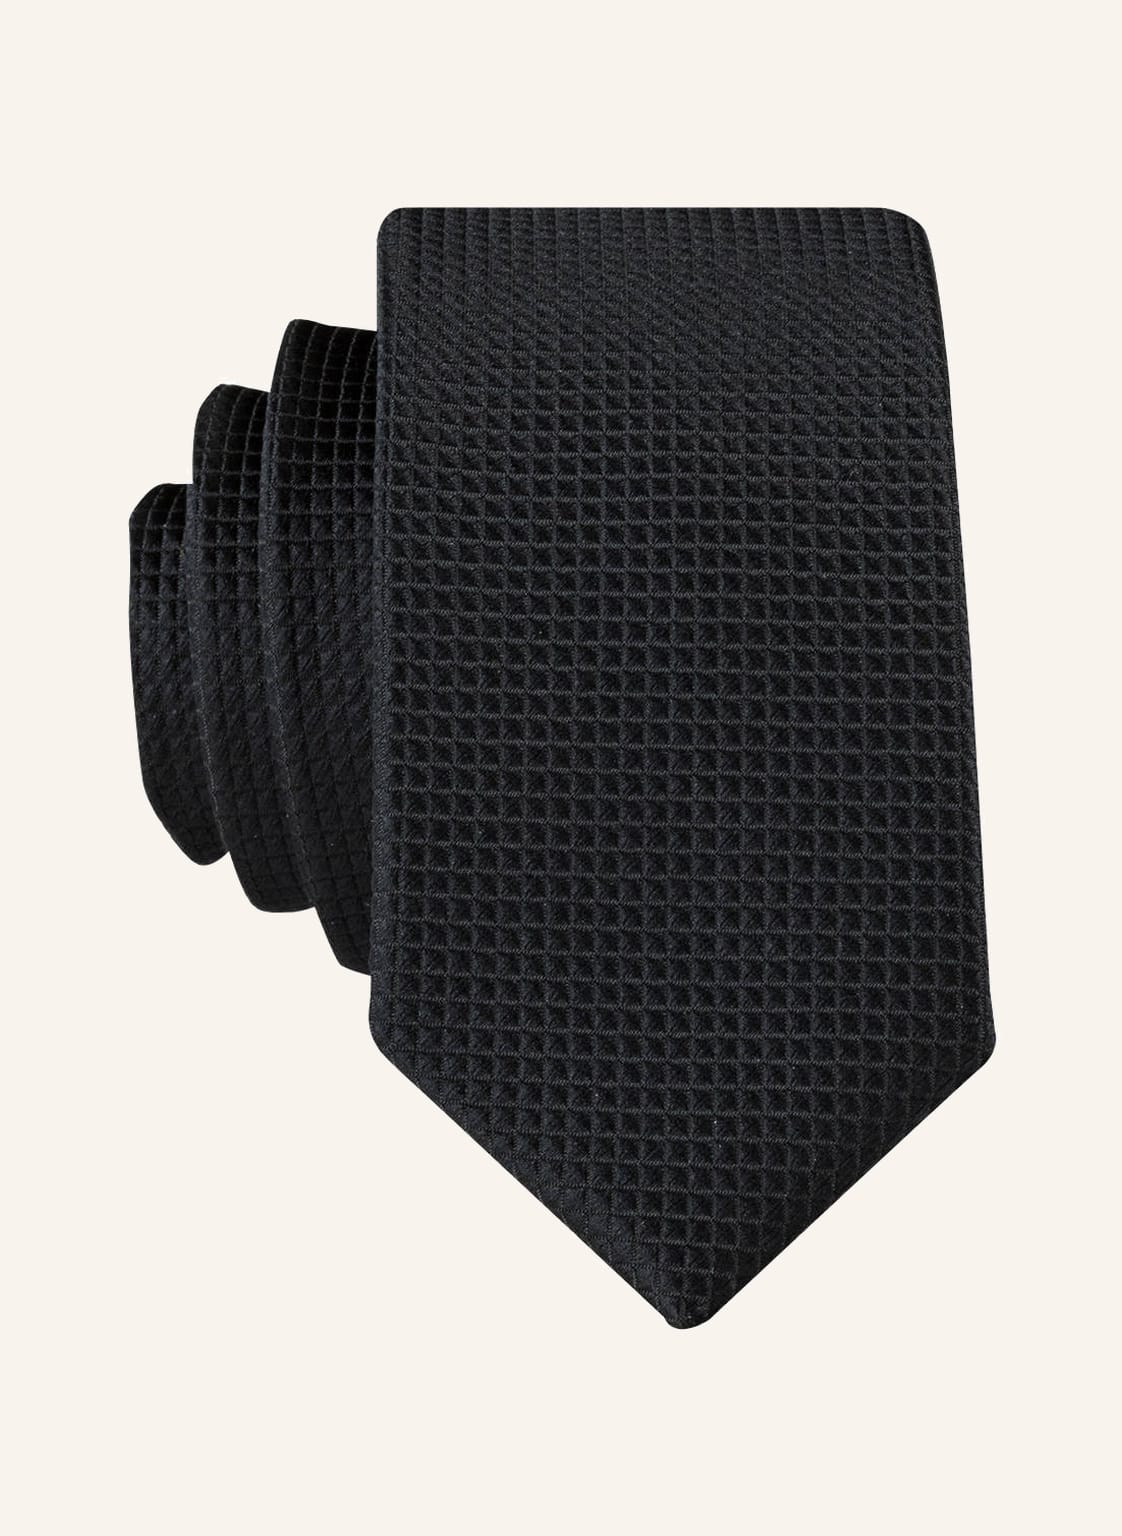 G.O.L. Finest Collection Krawatte schwarz von G.O.L. FINEST COLLECTION